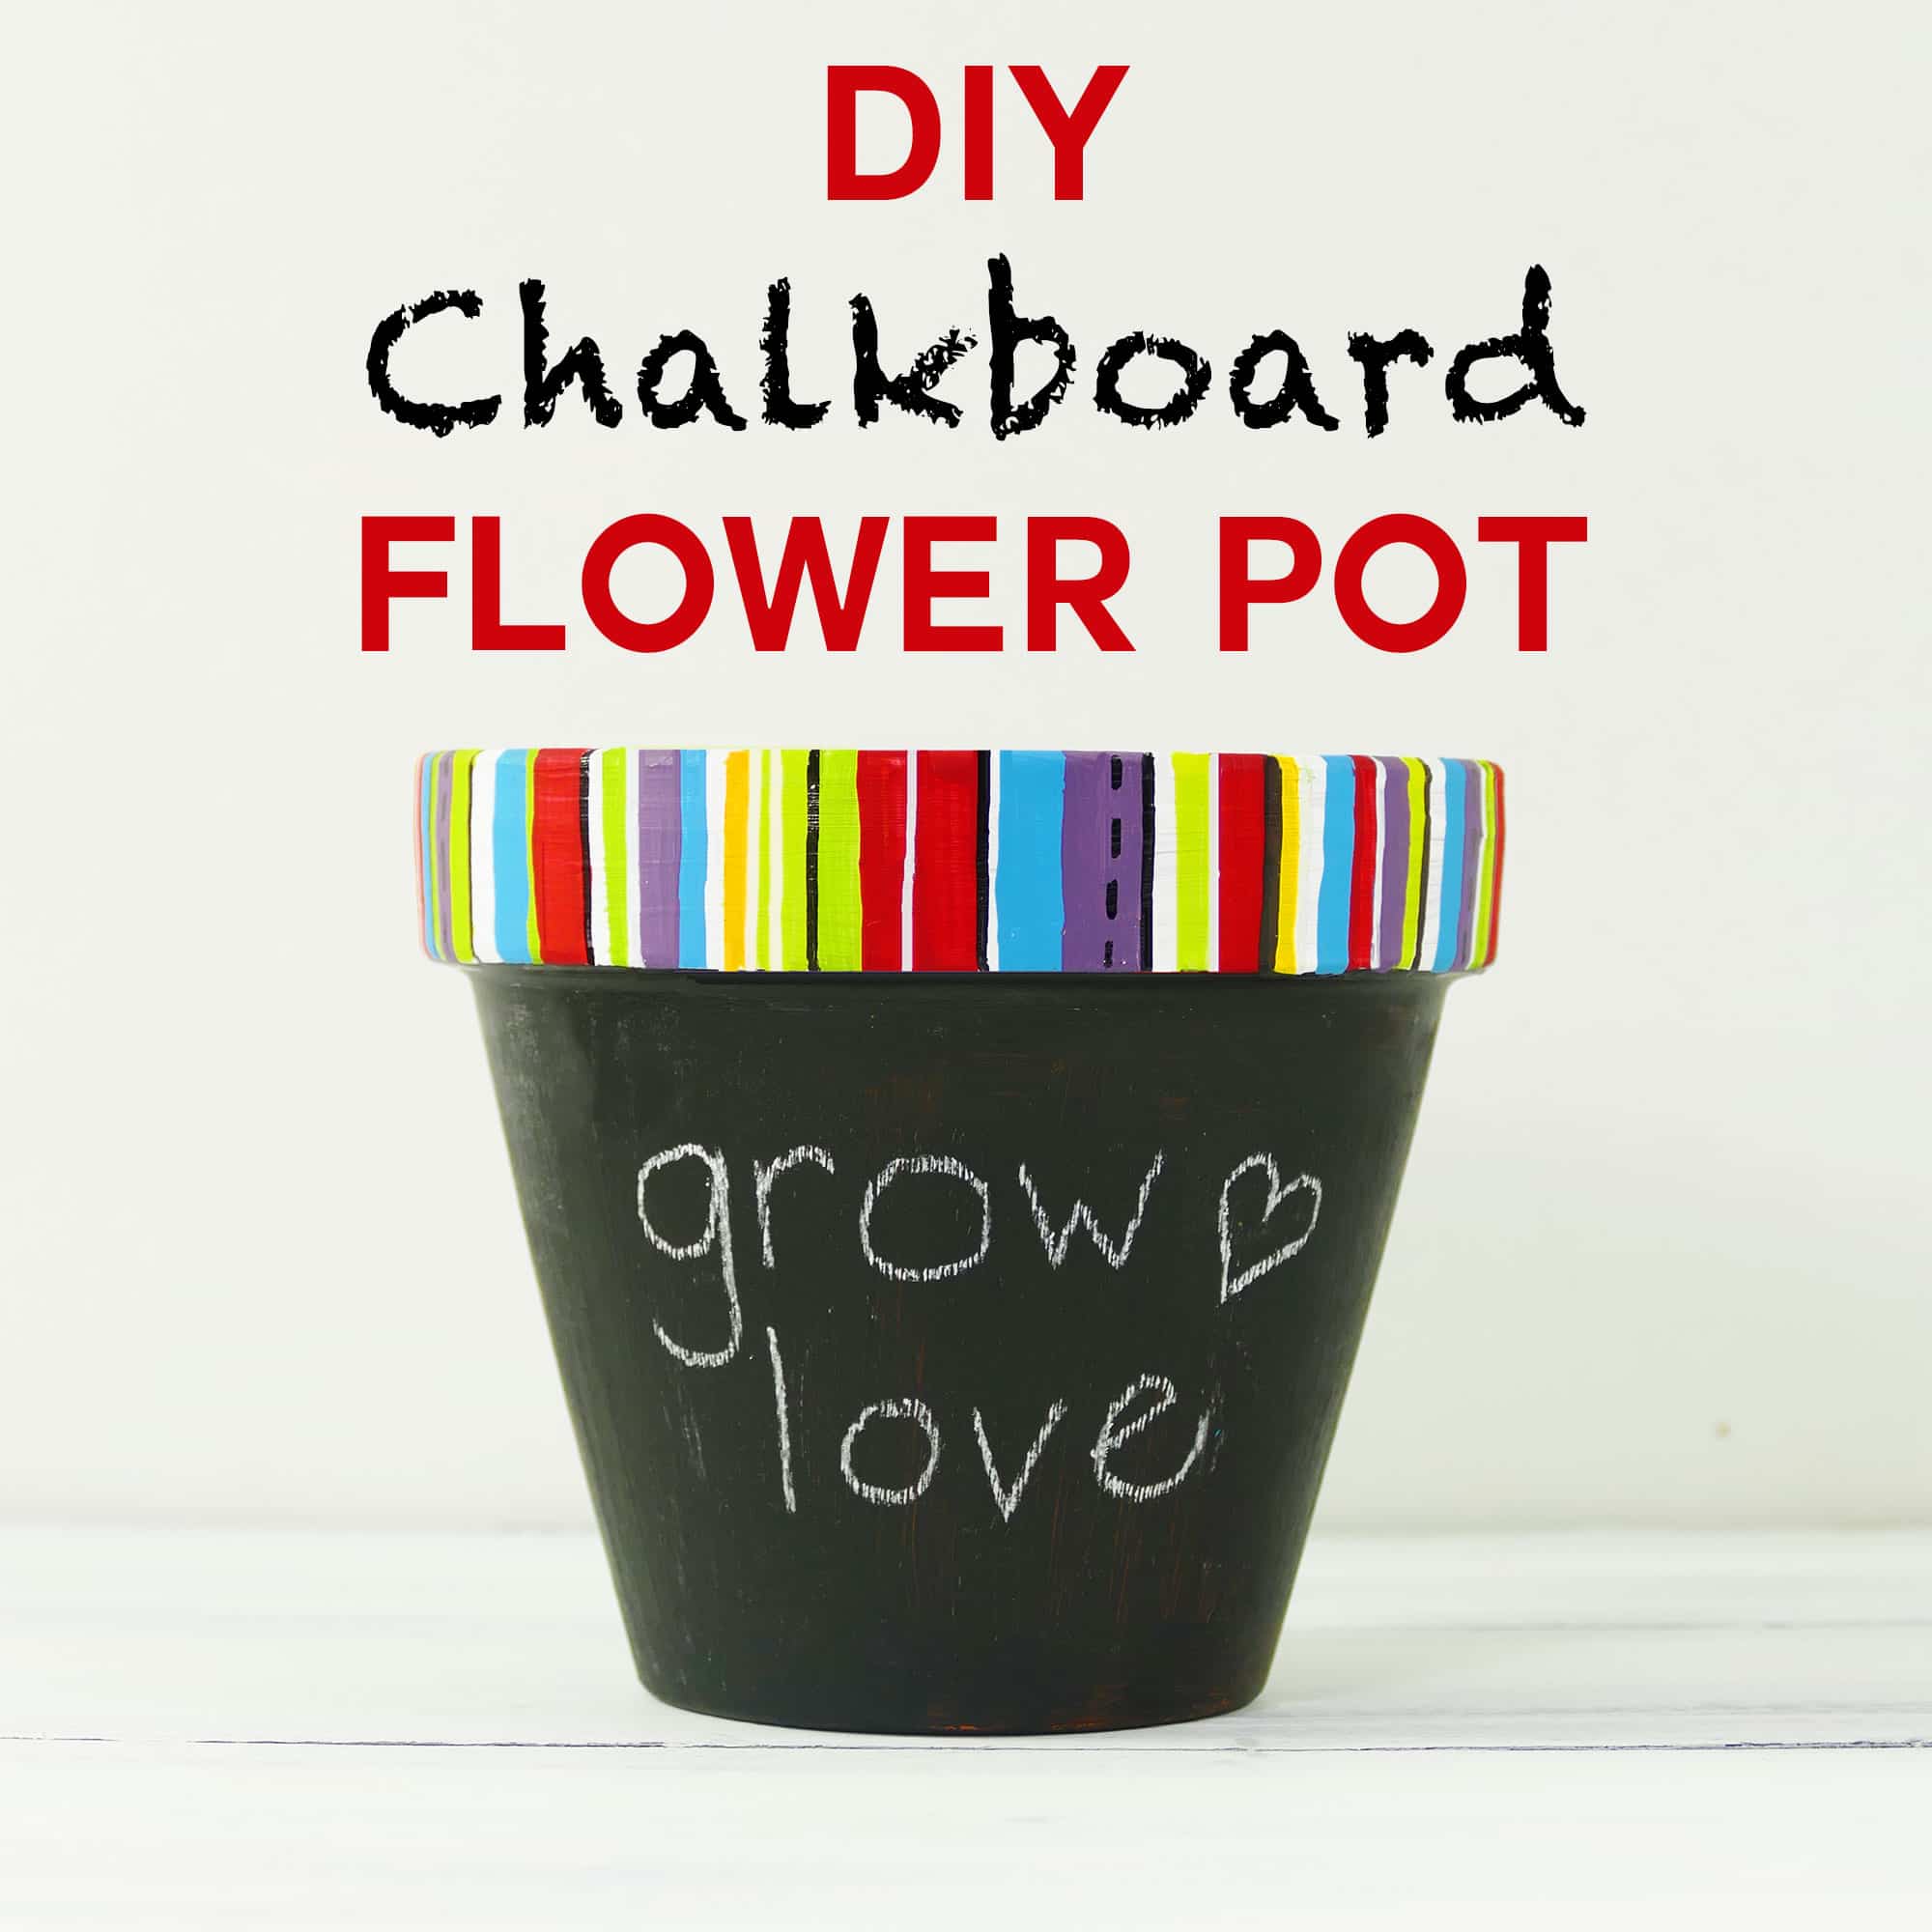 DIY Chalkboard Flower Pot